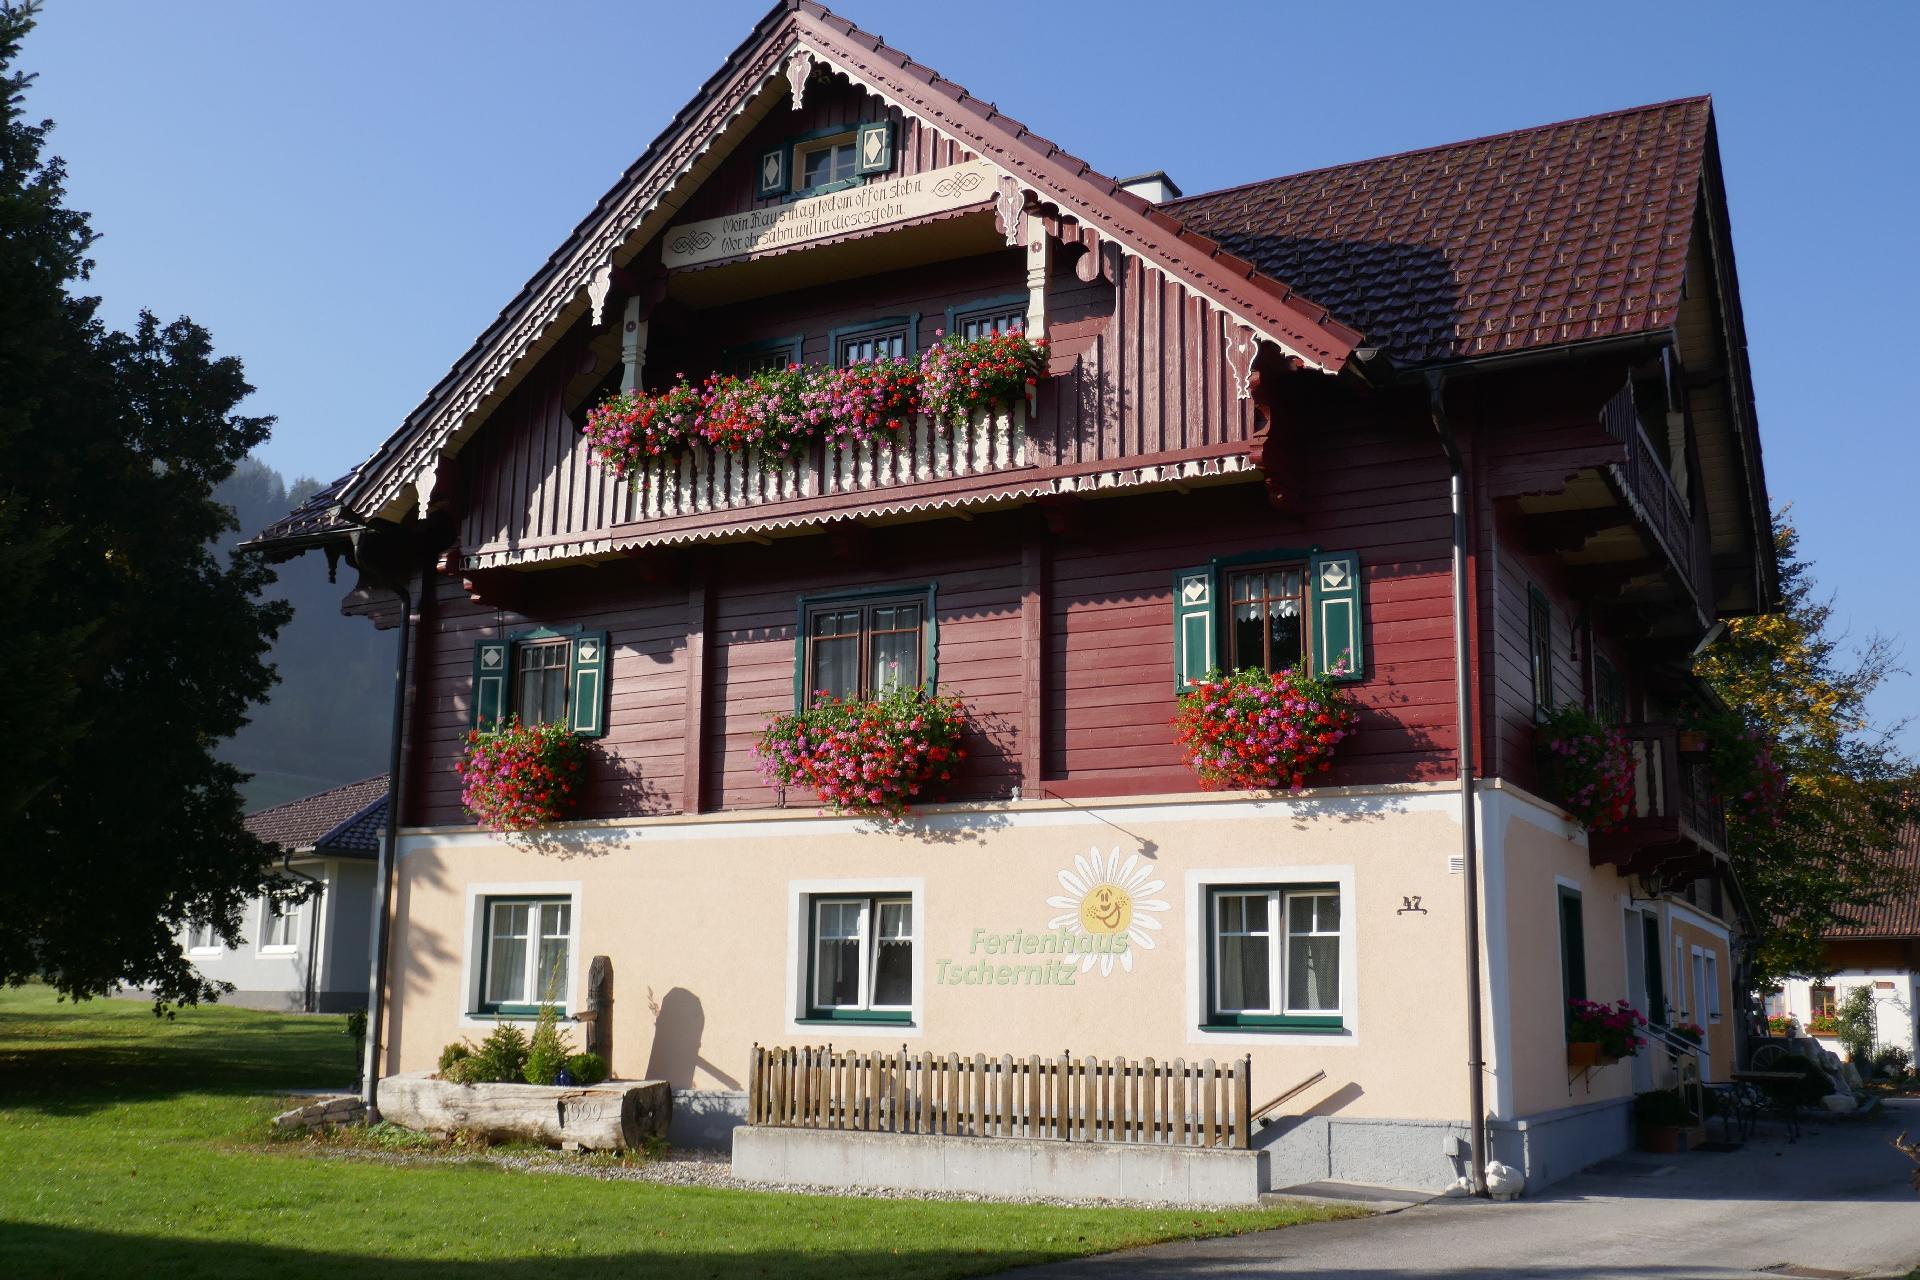 Ferienhaus in Pruggern mit Großem Garten Ferienhaus in Europa